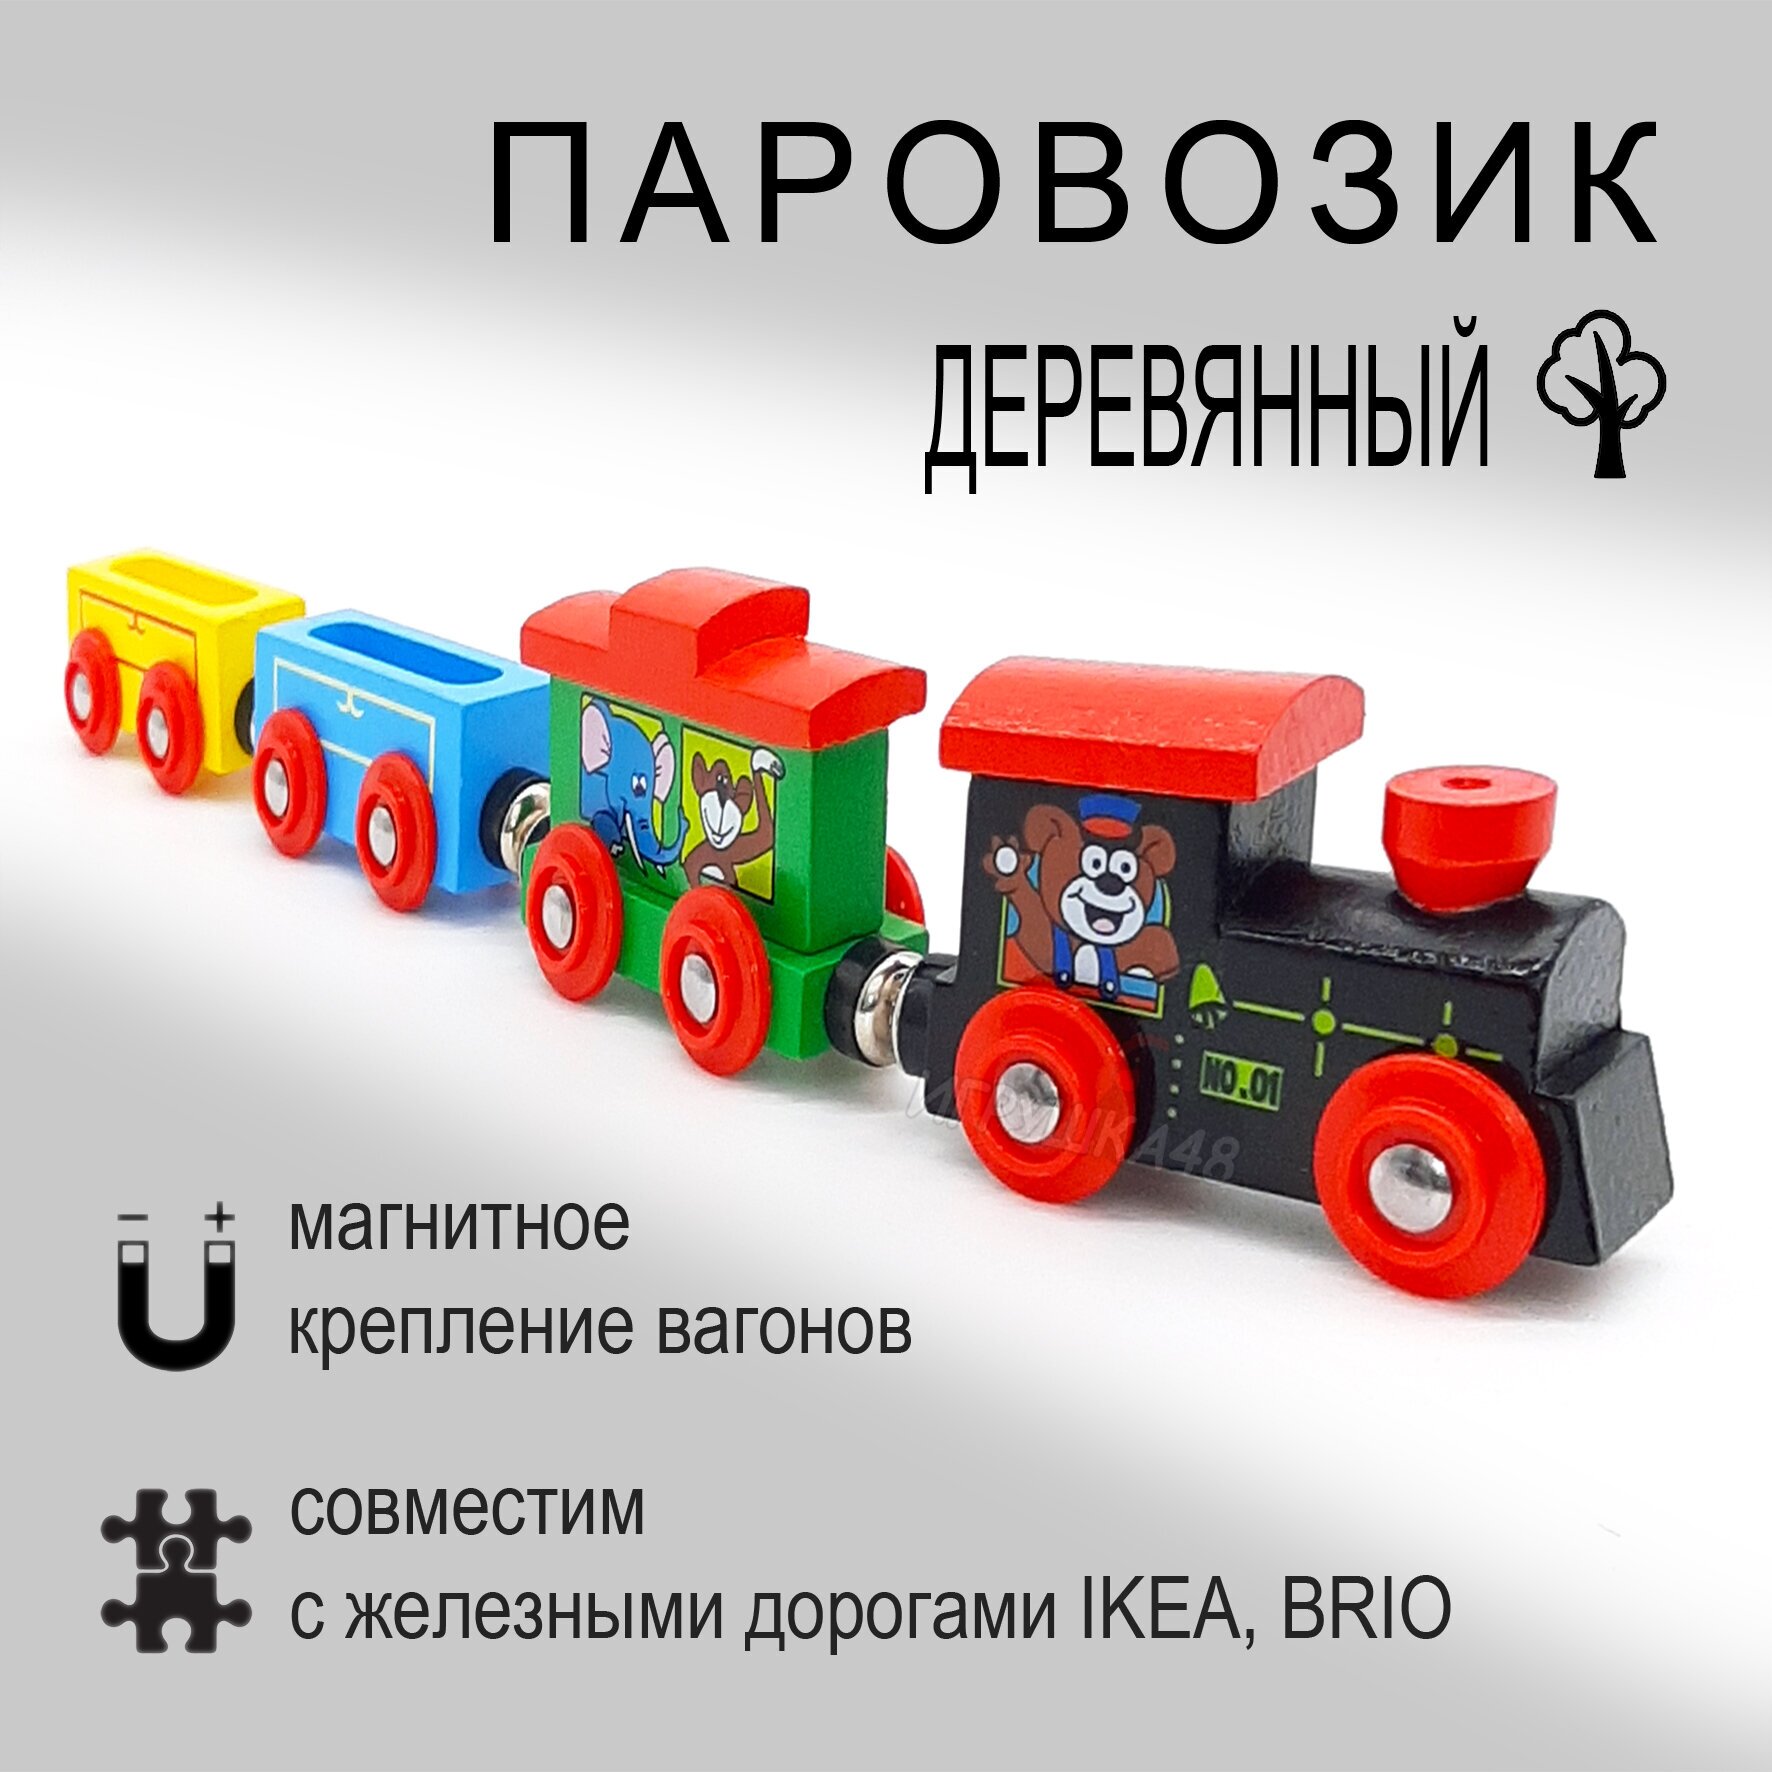 Паровозик деревянный на магнитах / Поезд магнитный для деревянных и пластиковых железных дорог / Зверюшки